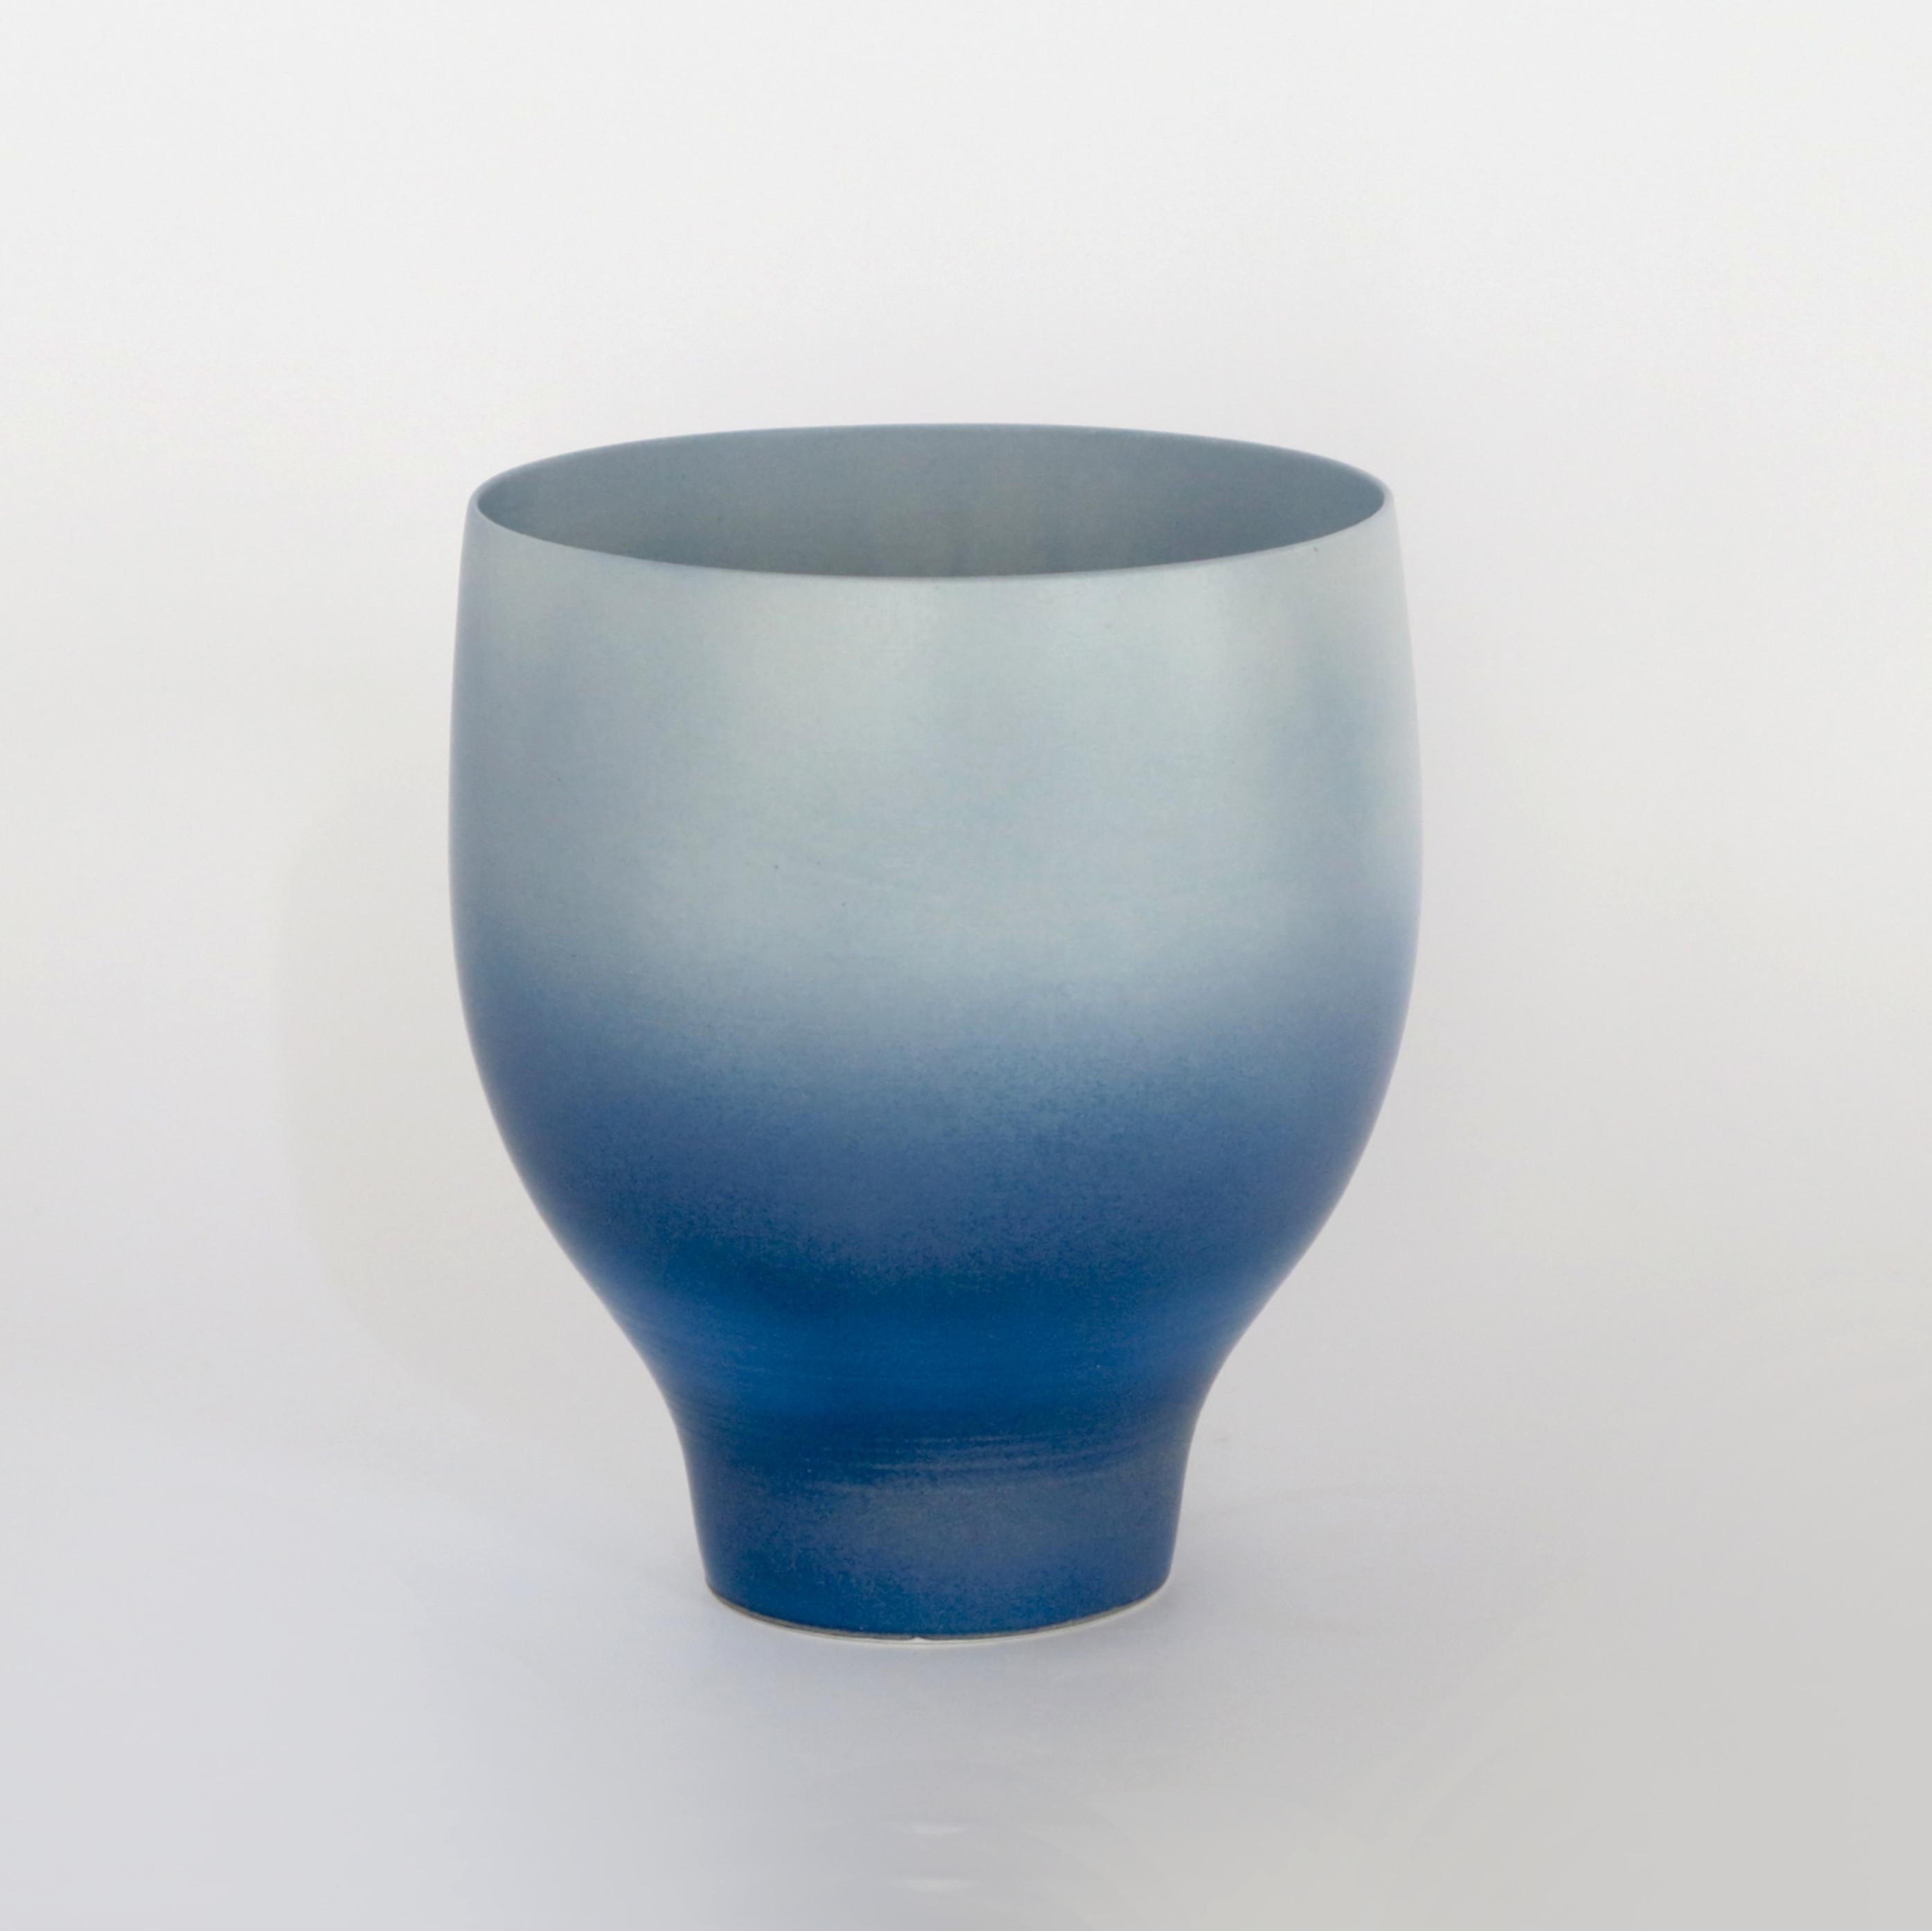 Grand vase d'inspiration Rothko par Cica Gomez
Dimensions : Ø 15,5 x H 20 cm
Matériaux : Porcelaine


Objets habituels. Mon travail est d'abord motivé par la recherche de la ligne. Celle qu'il dessine lorsque l'objet prend forme et place dans